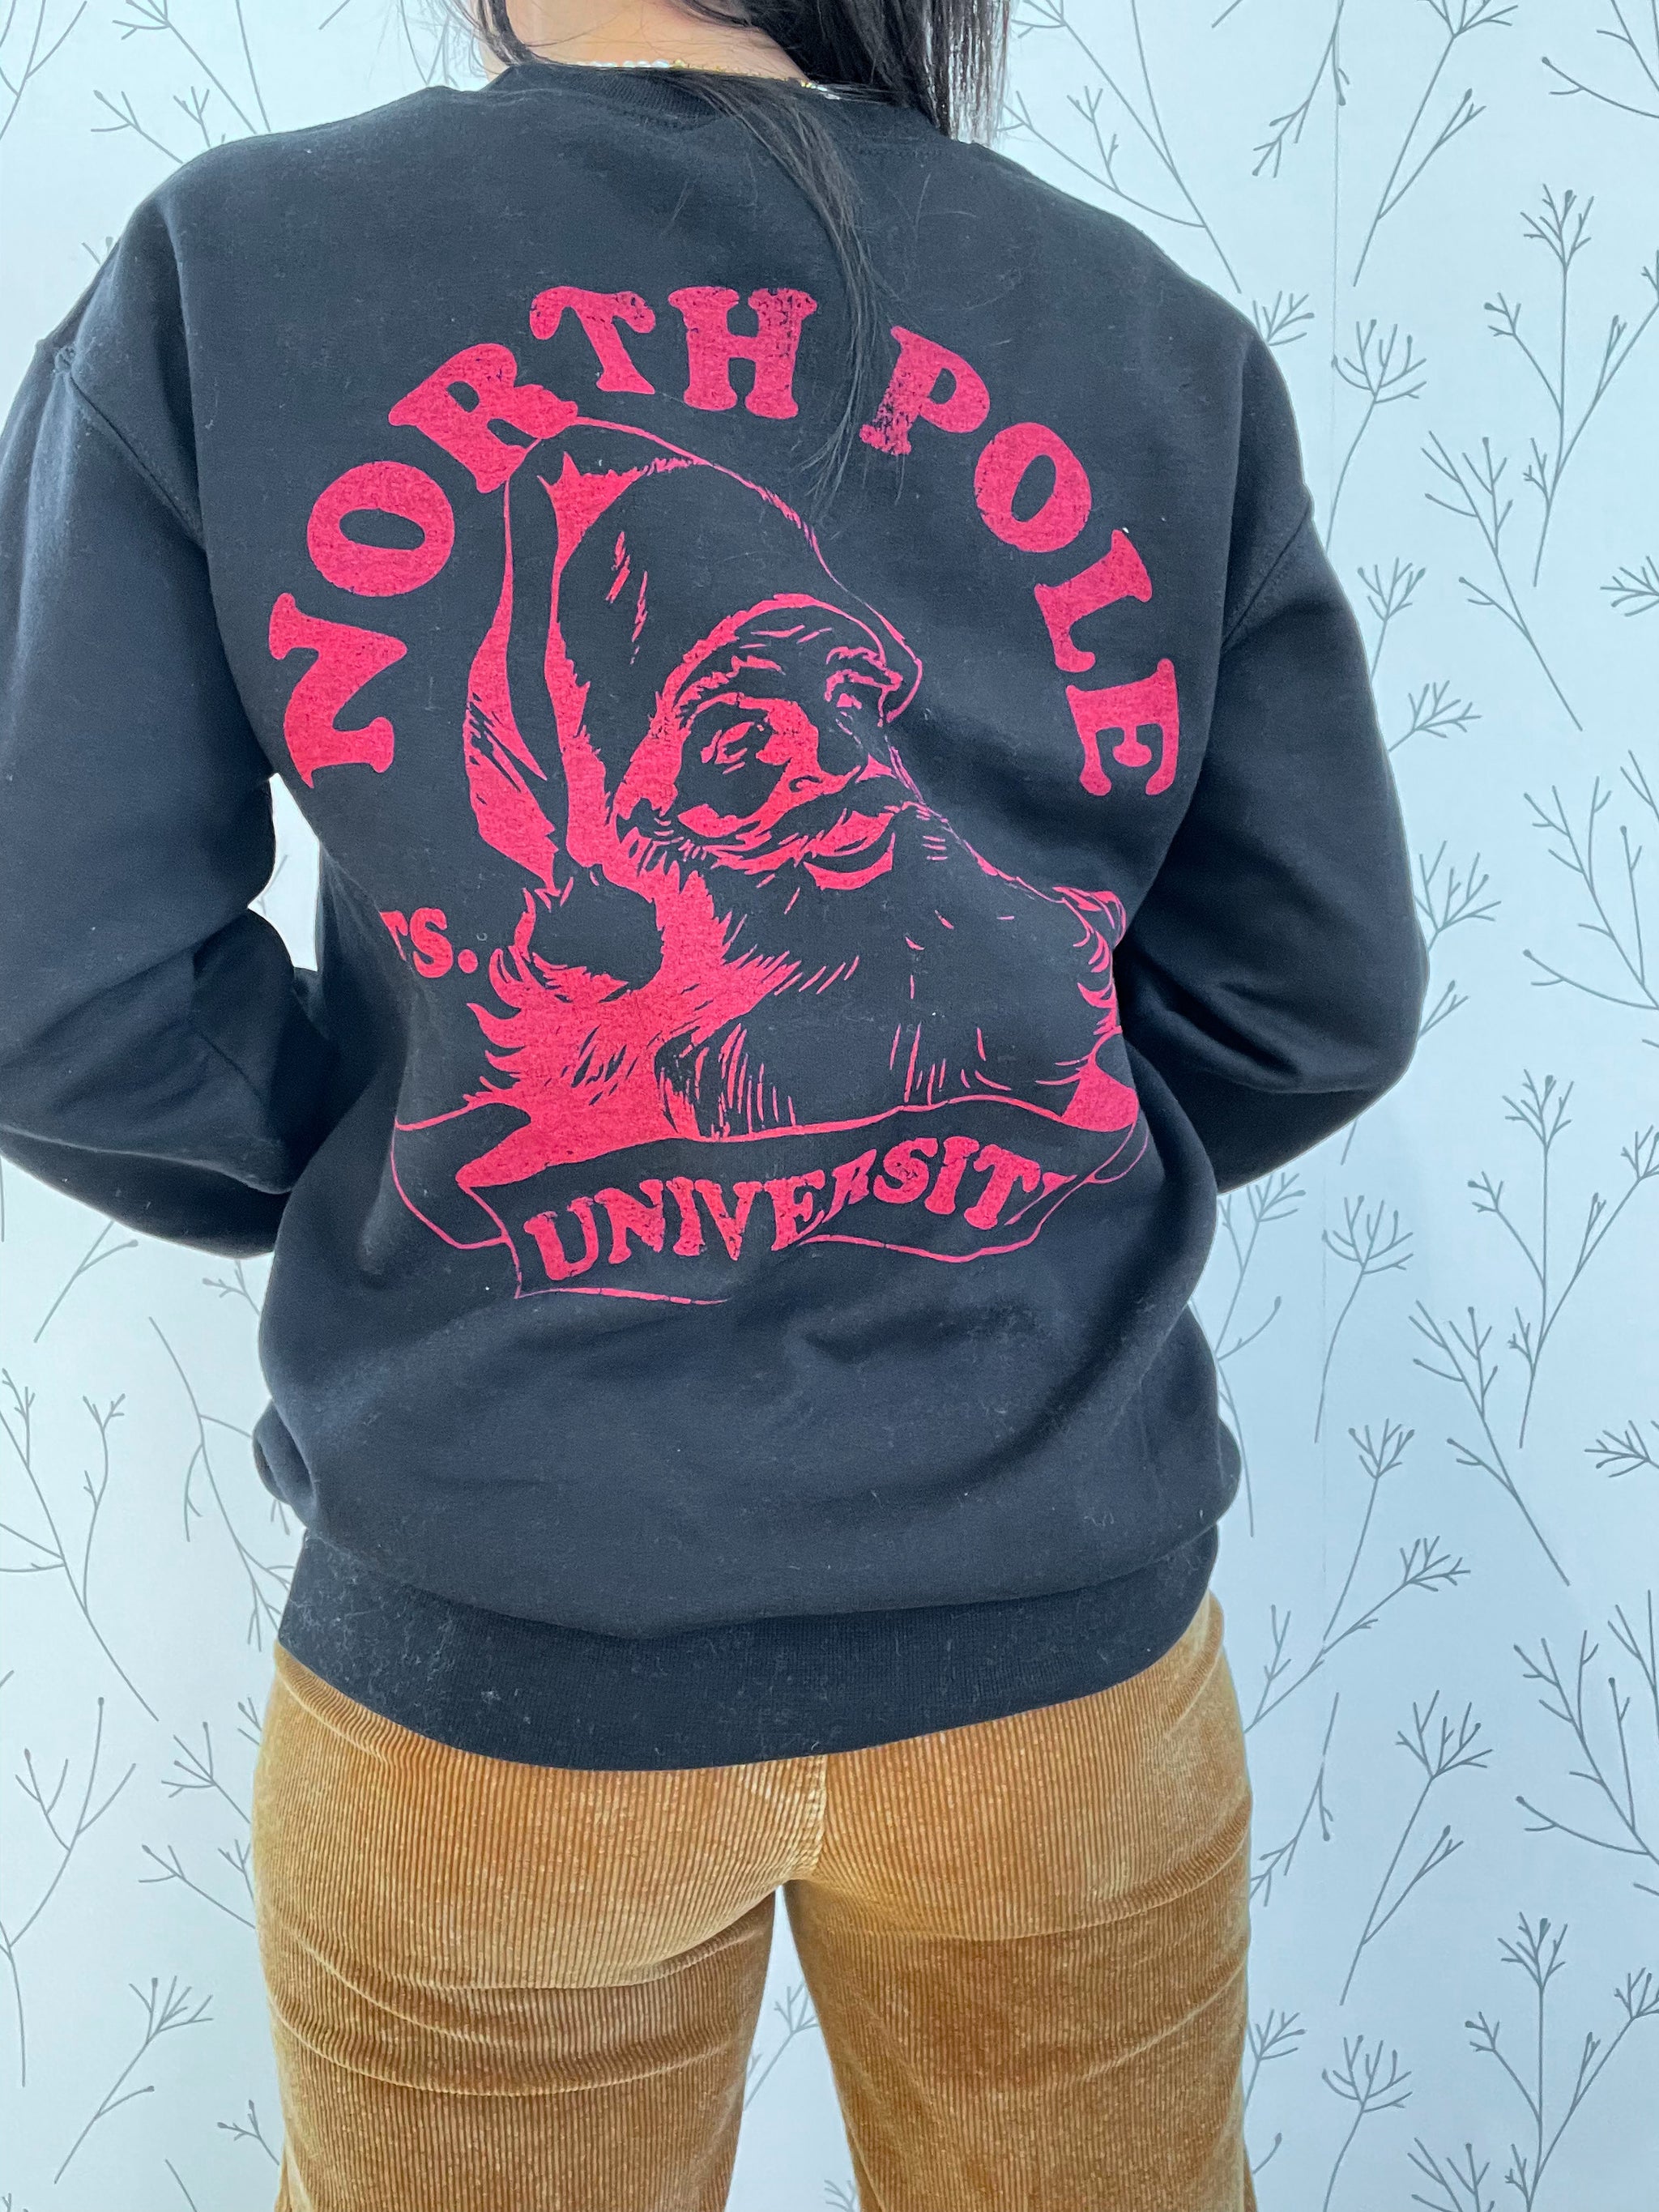 "North Pole University" Crew Neck